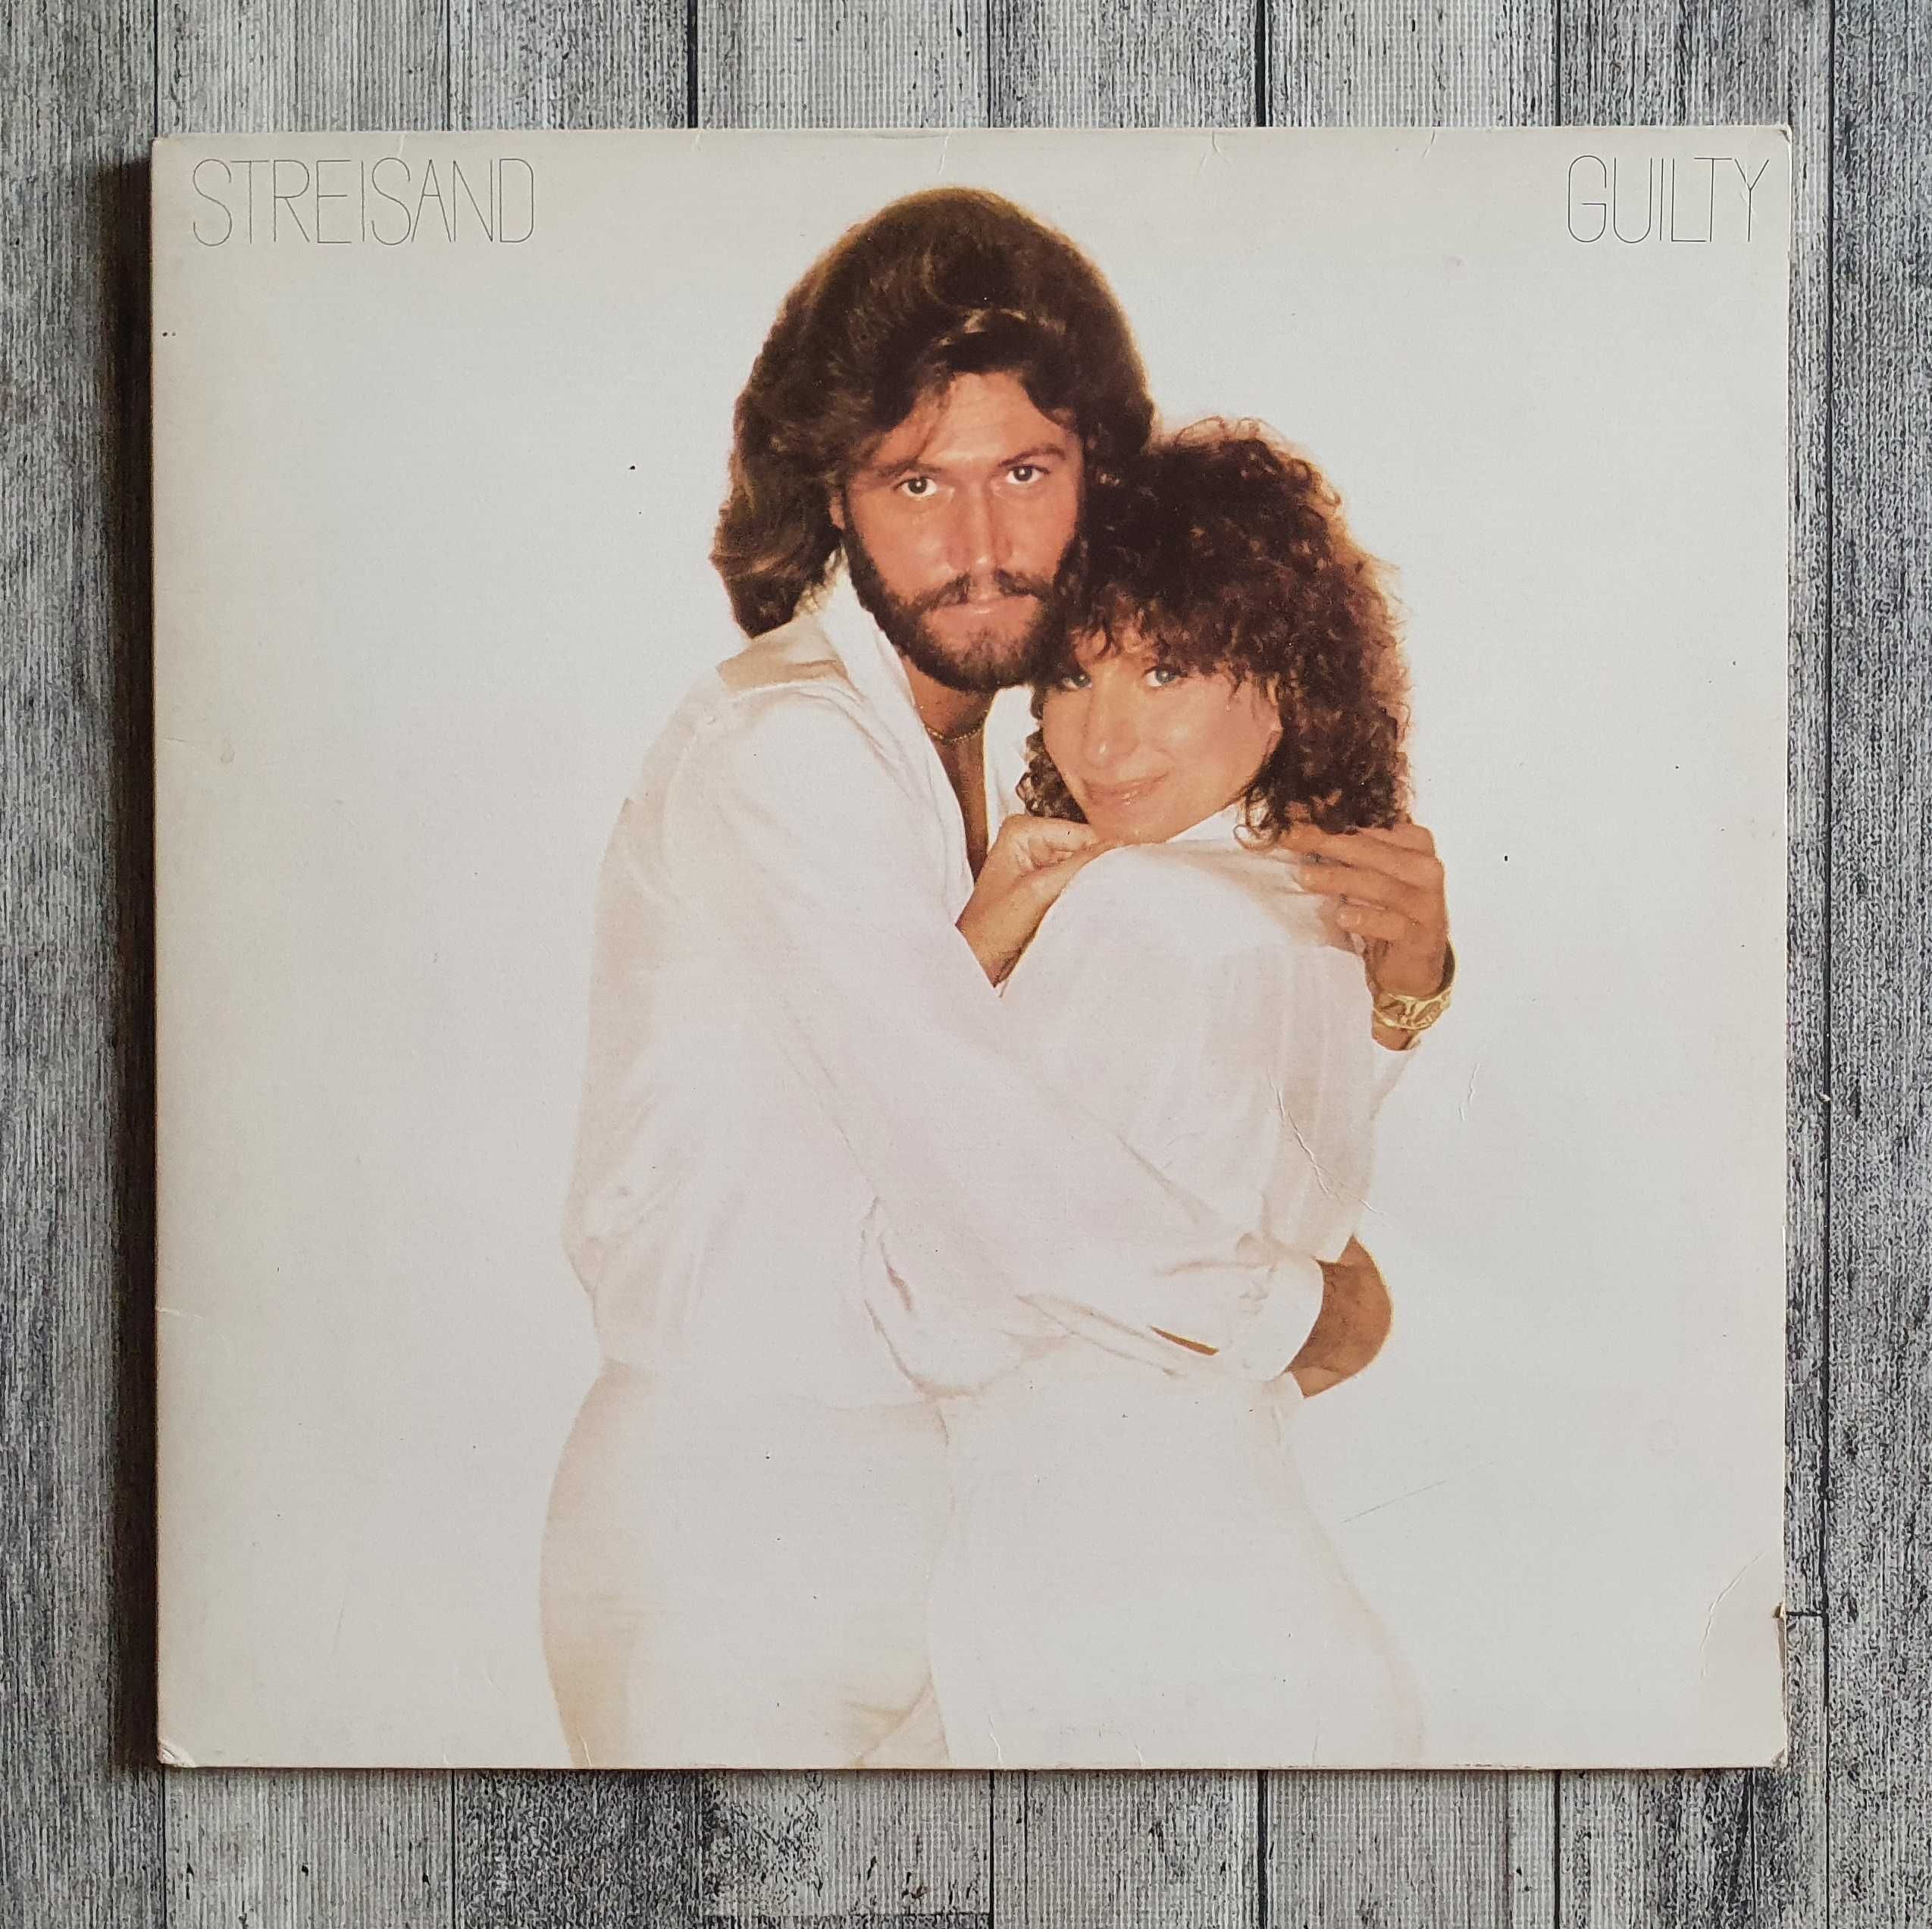 Barbra Streisand & Barry Gibb Guilty LP 12